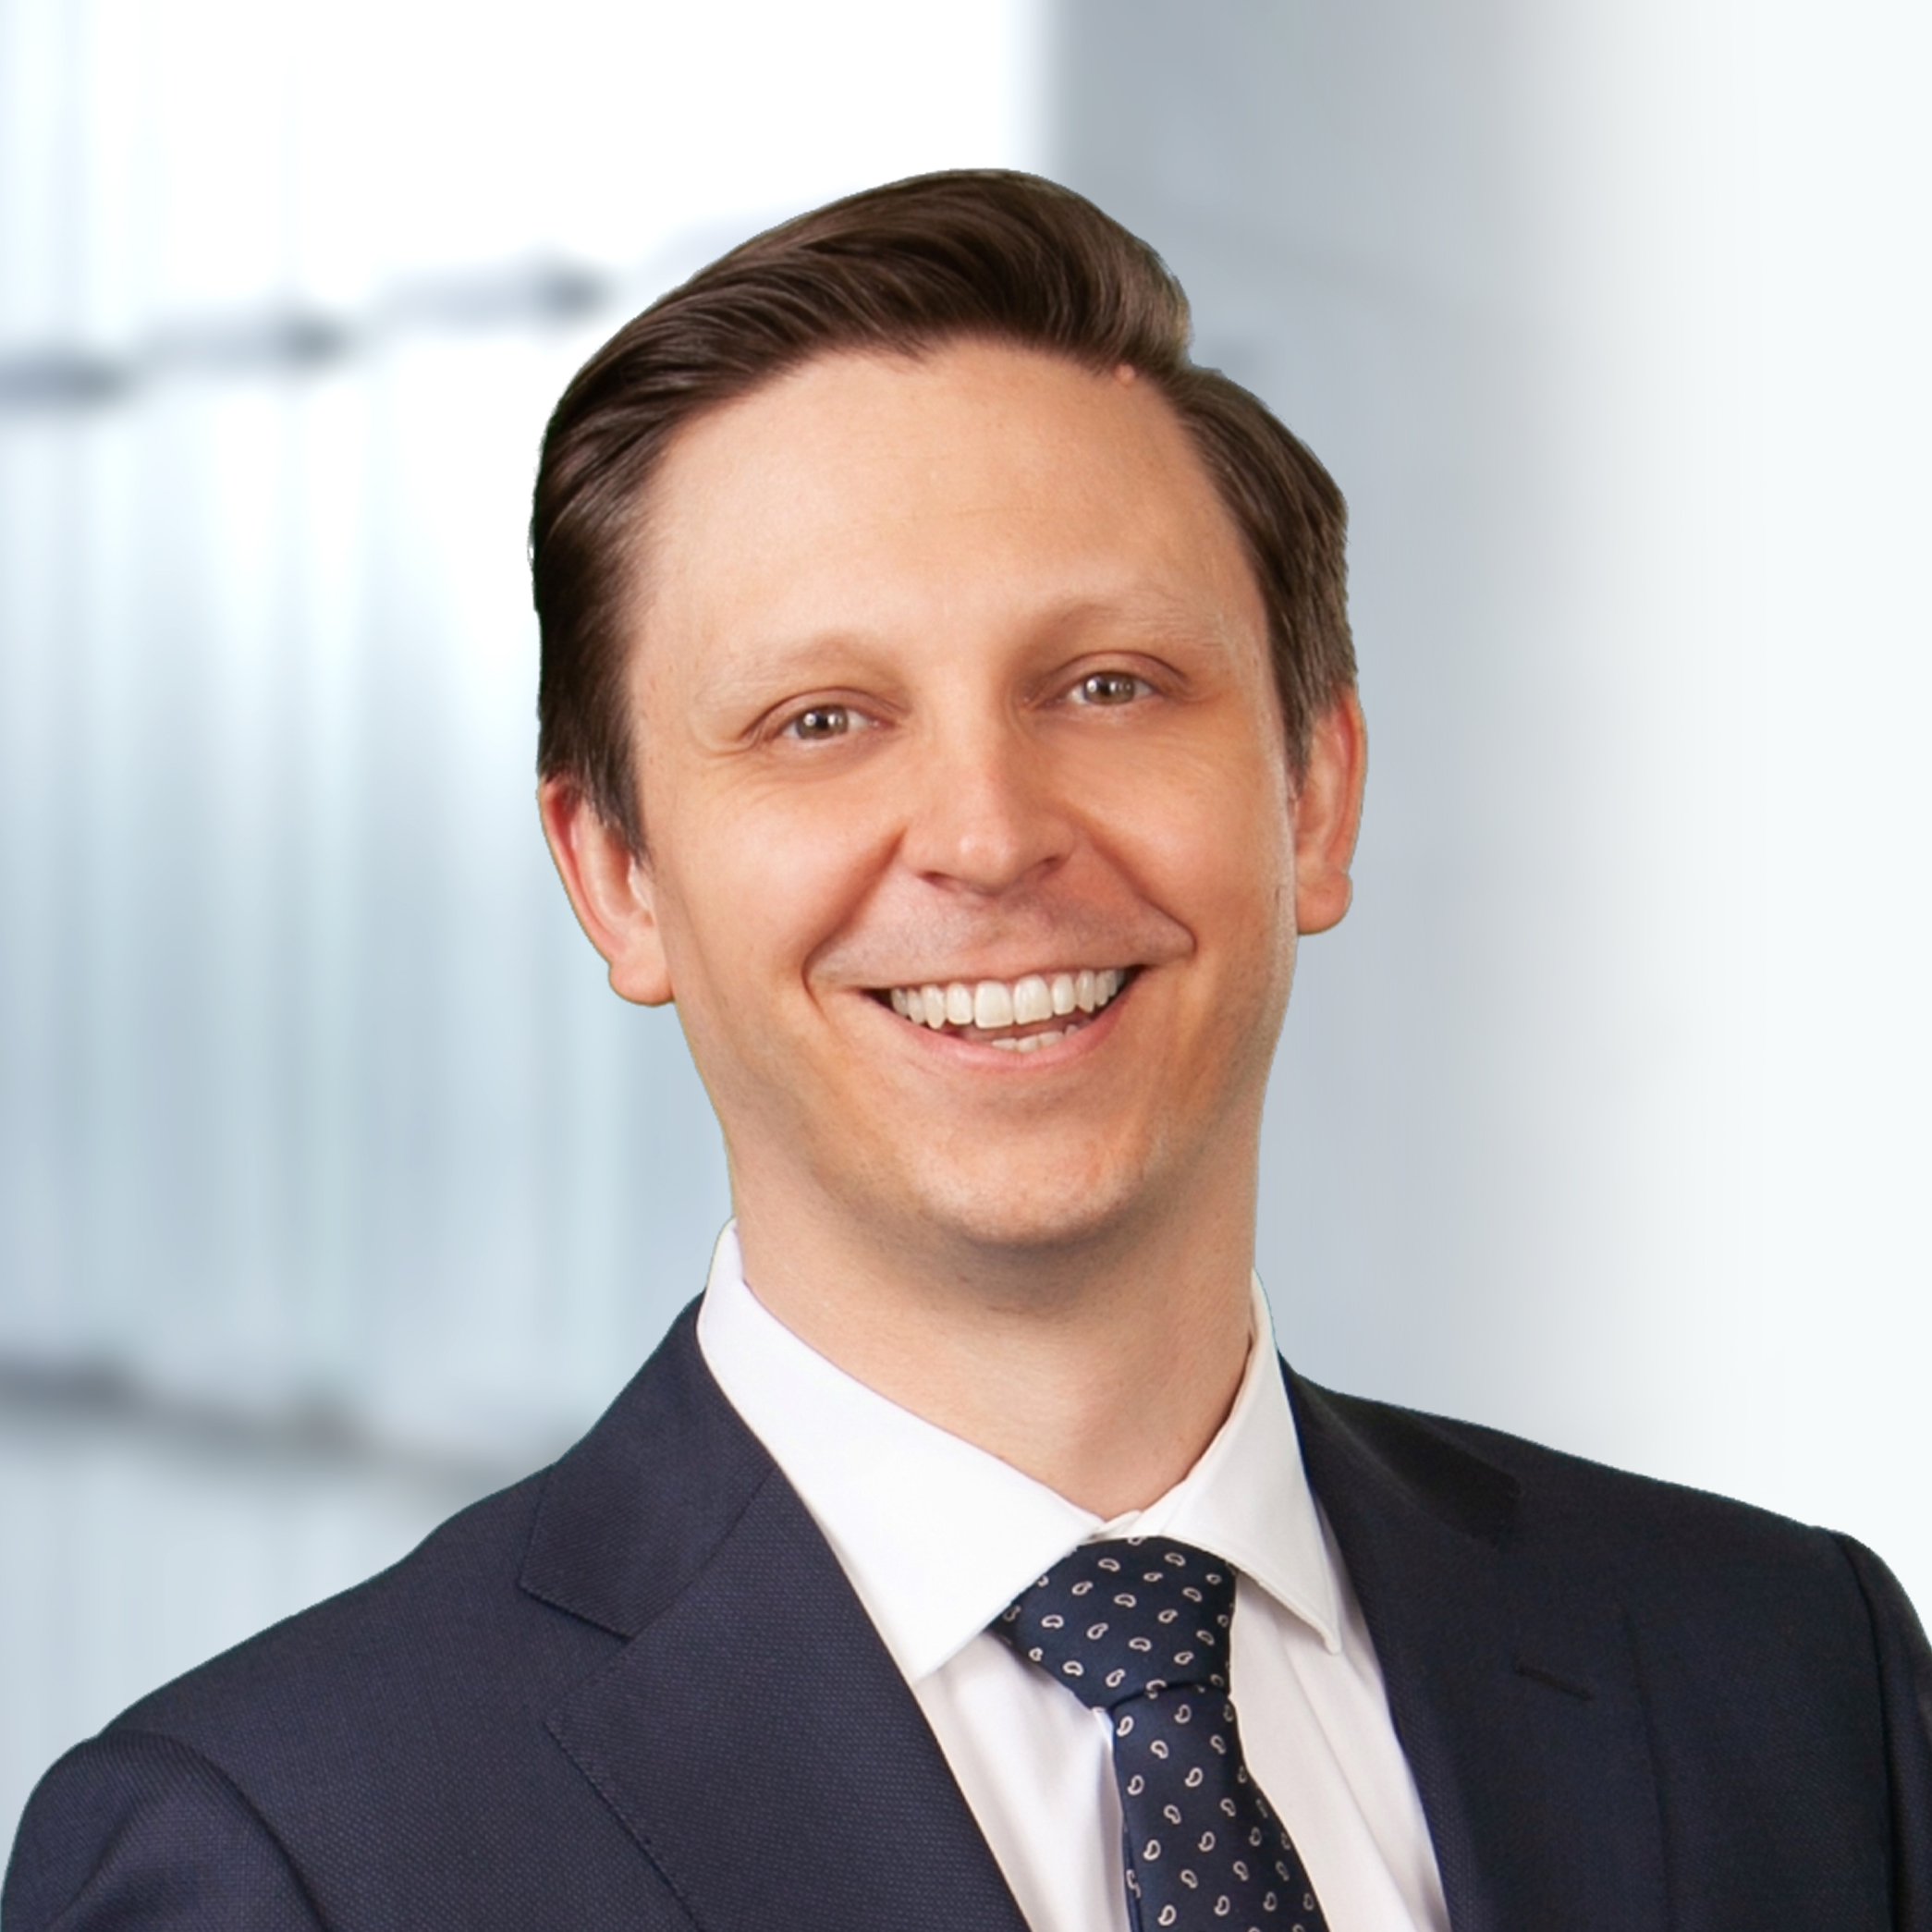 David Hammack has been elected a shareholder in Hallett & Perrin, P.C.'s litigation practice.